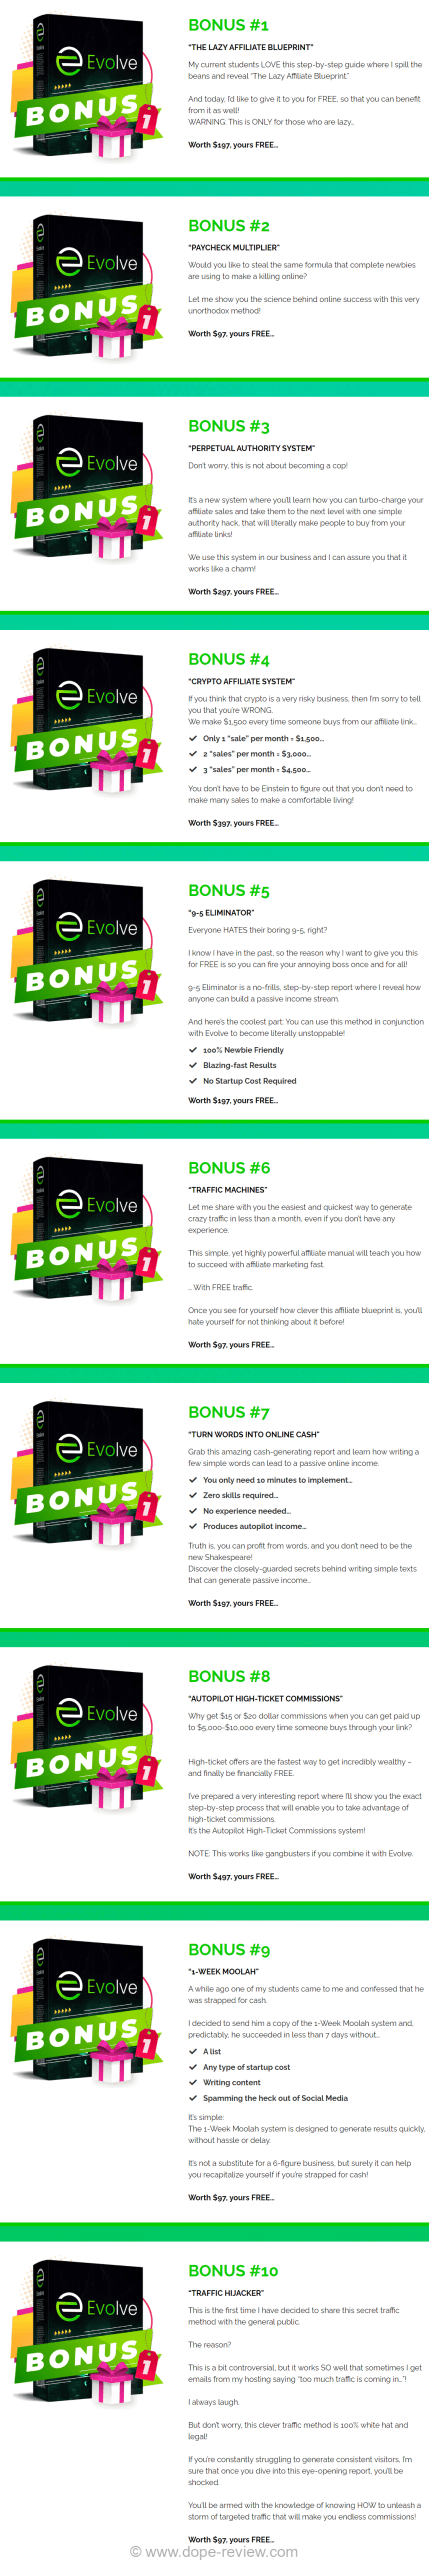 Evolve App Bonus